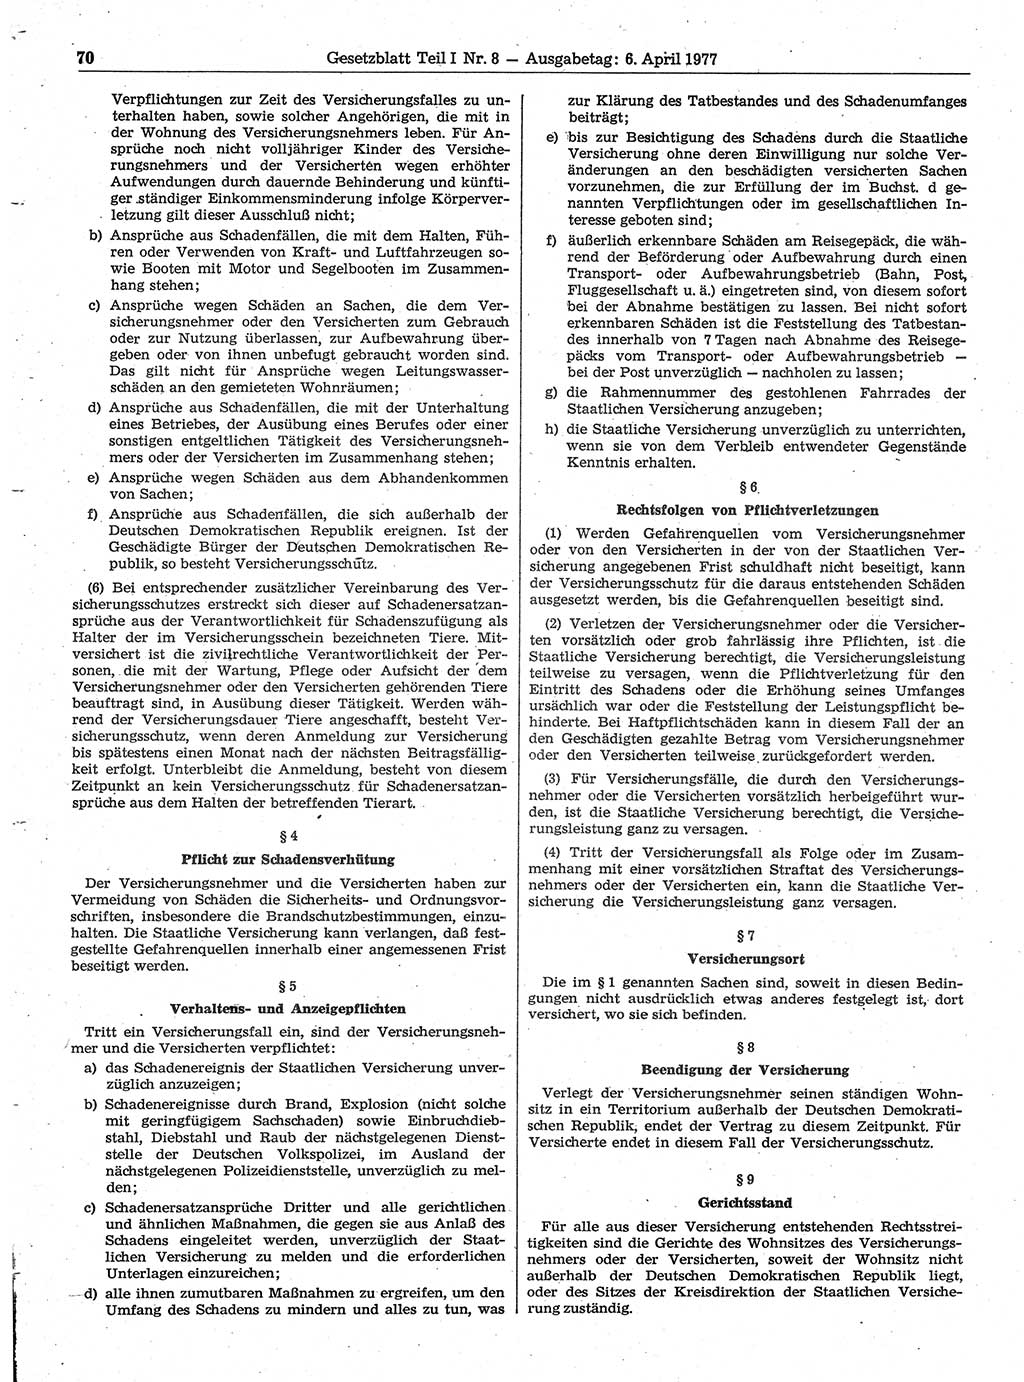 Gesetzblatt (GBl.) der Deutschen Demokratischen Republik (DDR) Teil Ⅰ 1977, Seite 70 (GBl. DDR Ⅰ 1977, S. 70)